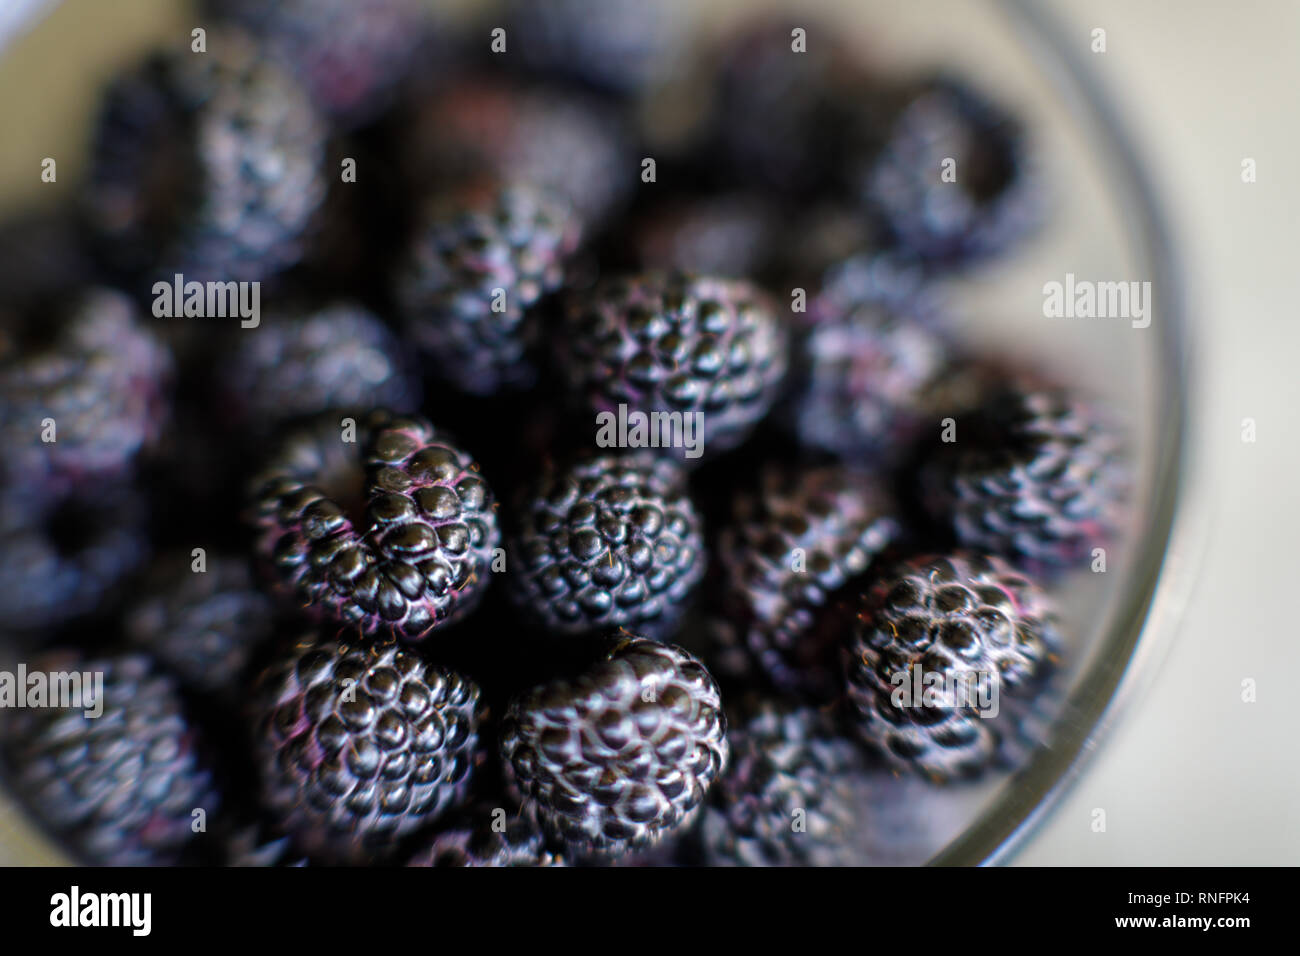 Blackberries, in the genus Rubus in the family Rosaceae. Stock Photo